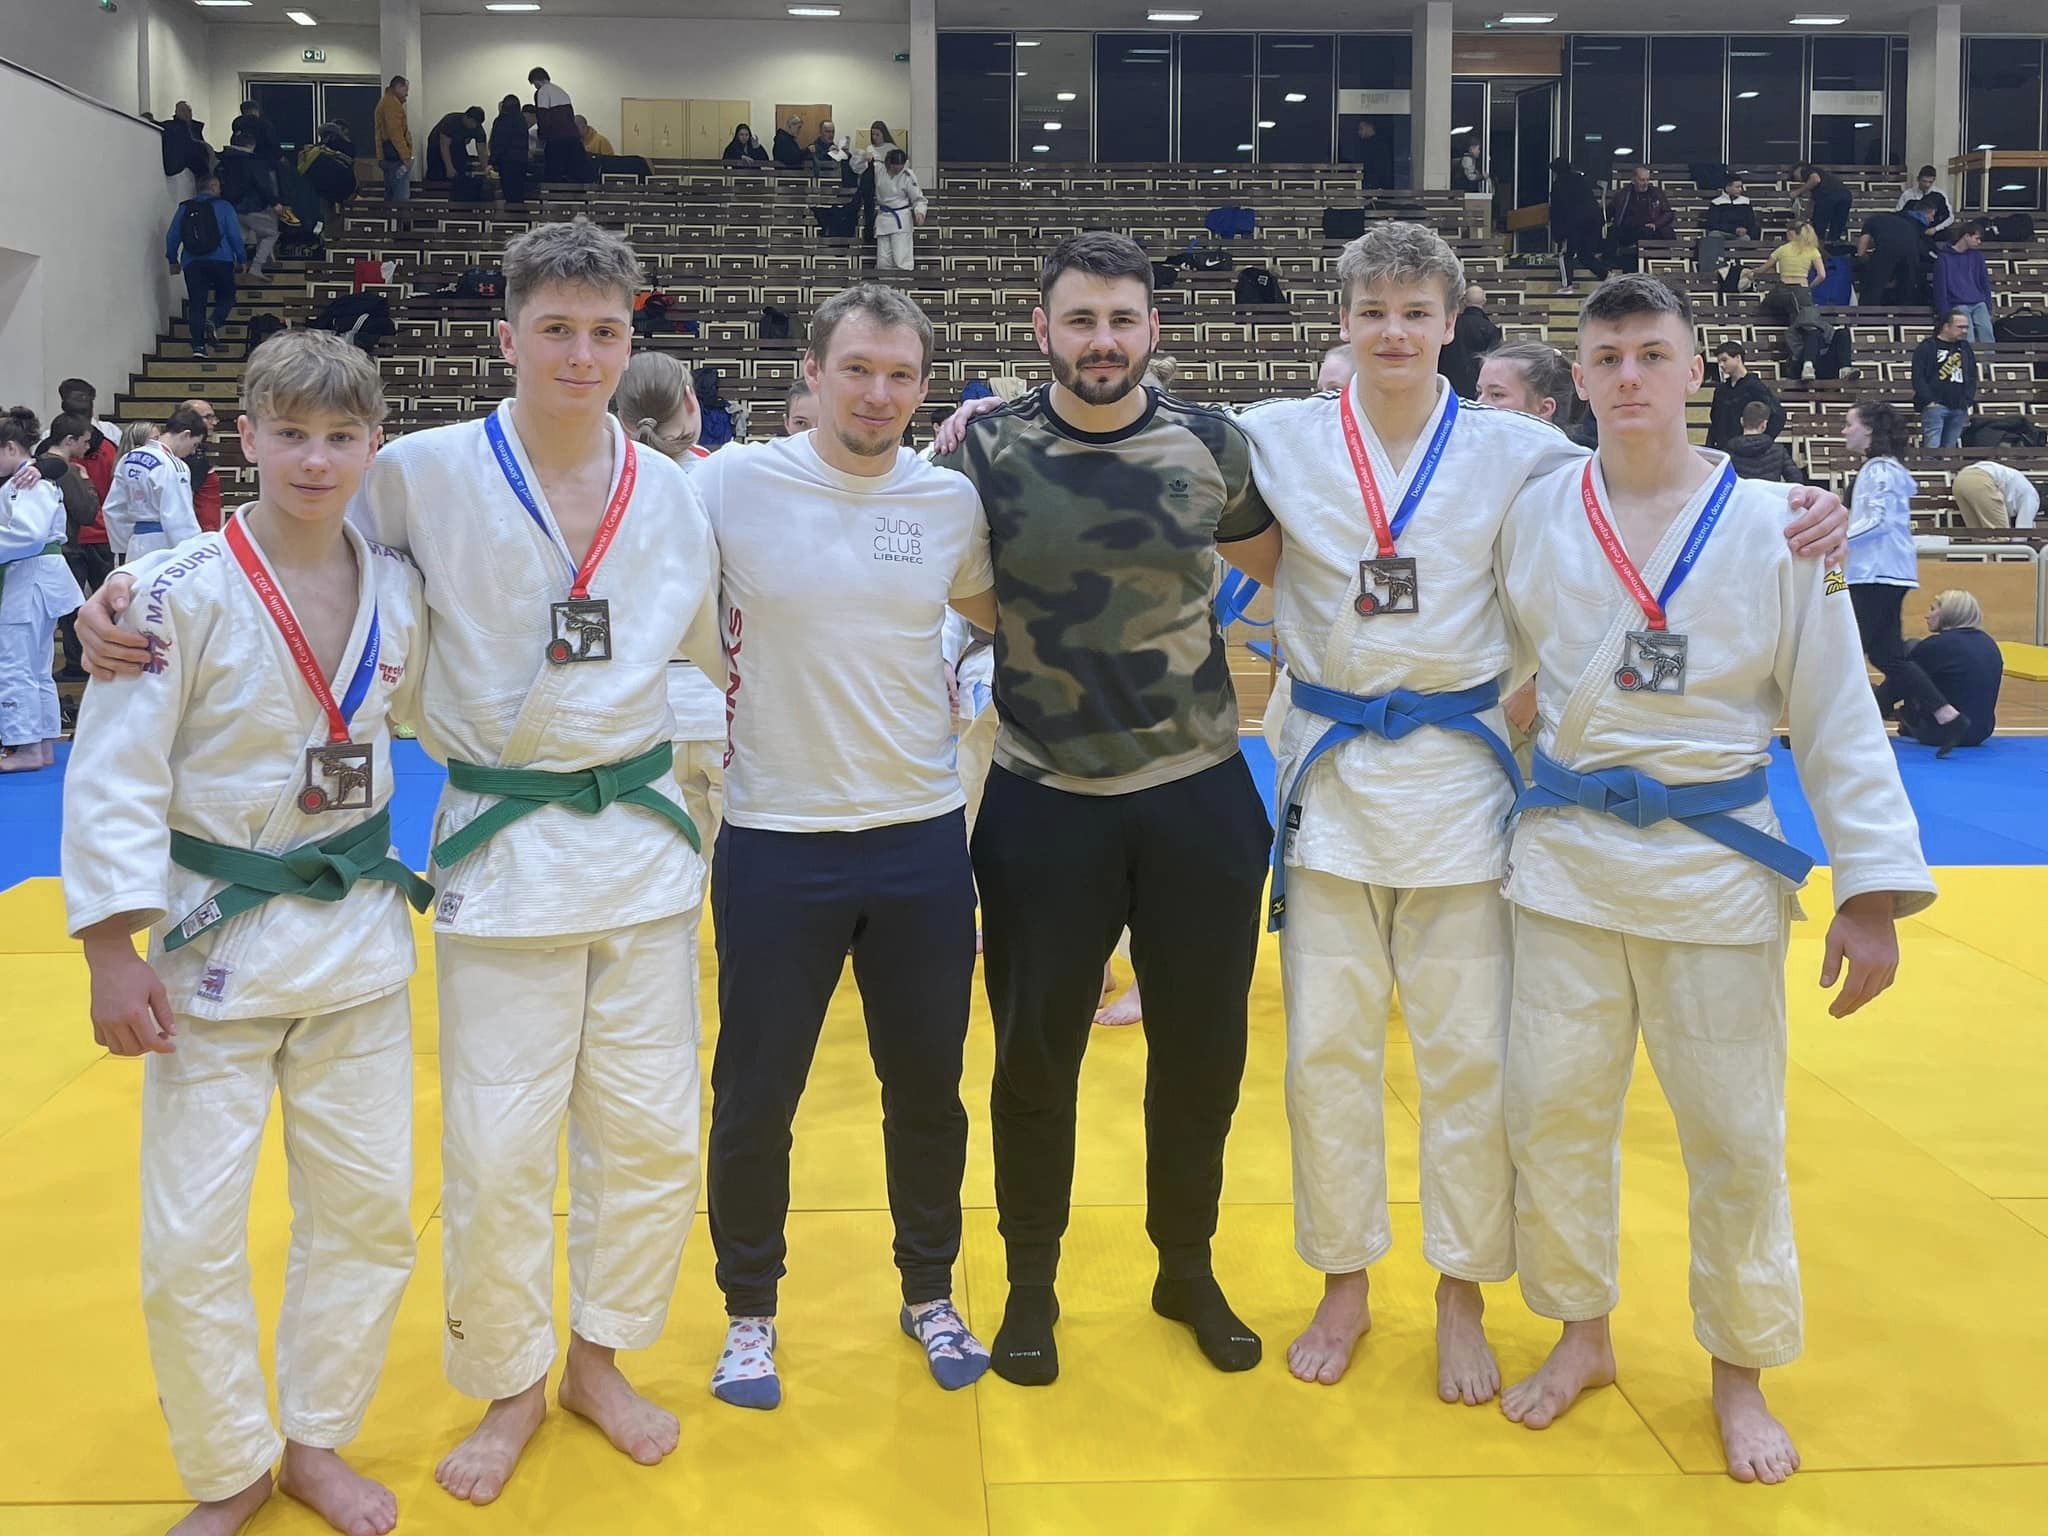 JudoClub veze z Mistrovství ČR dorostu 4 medaile